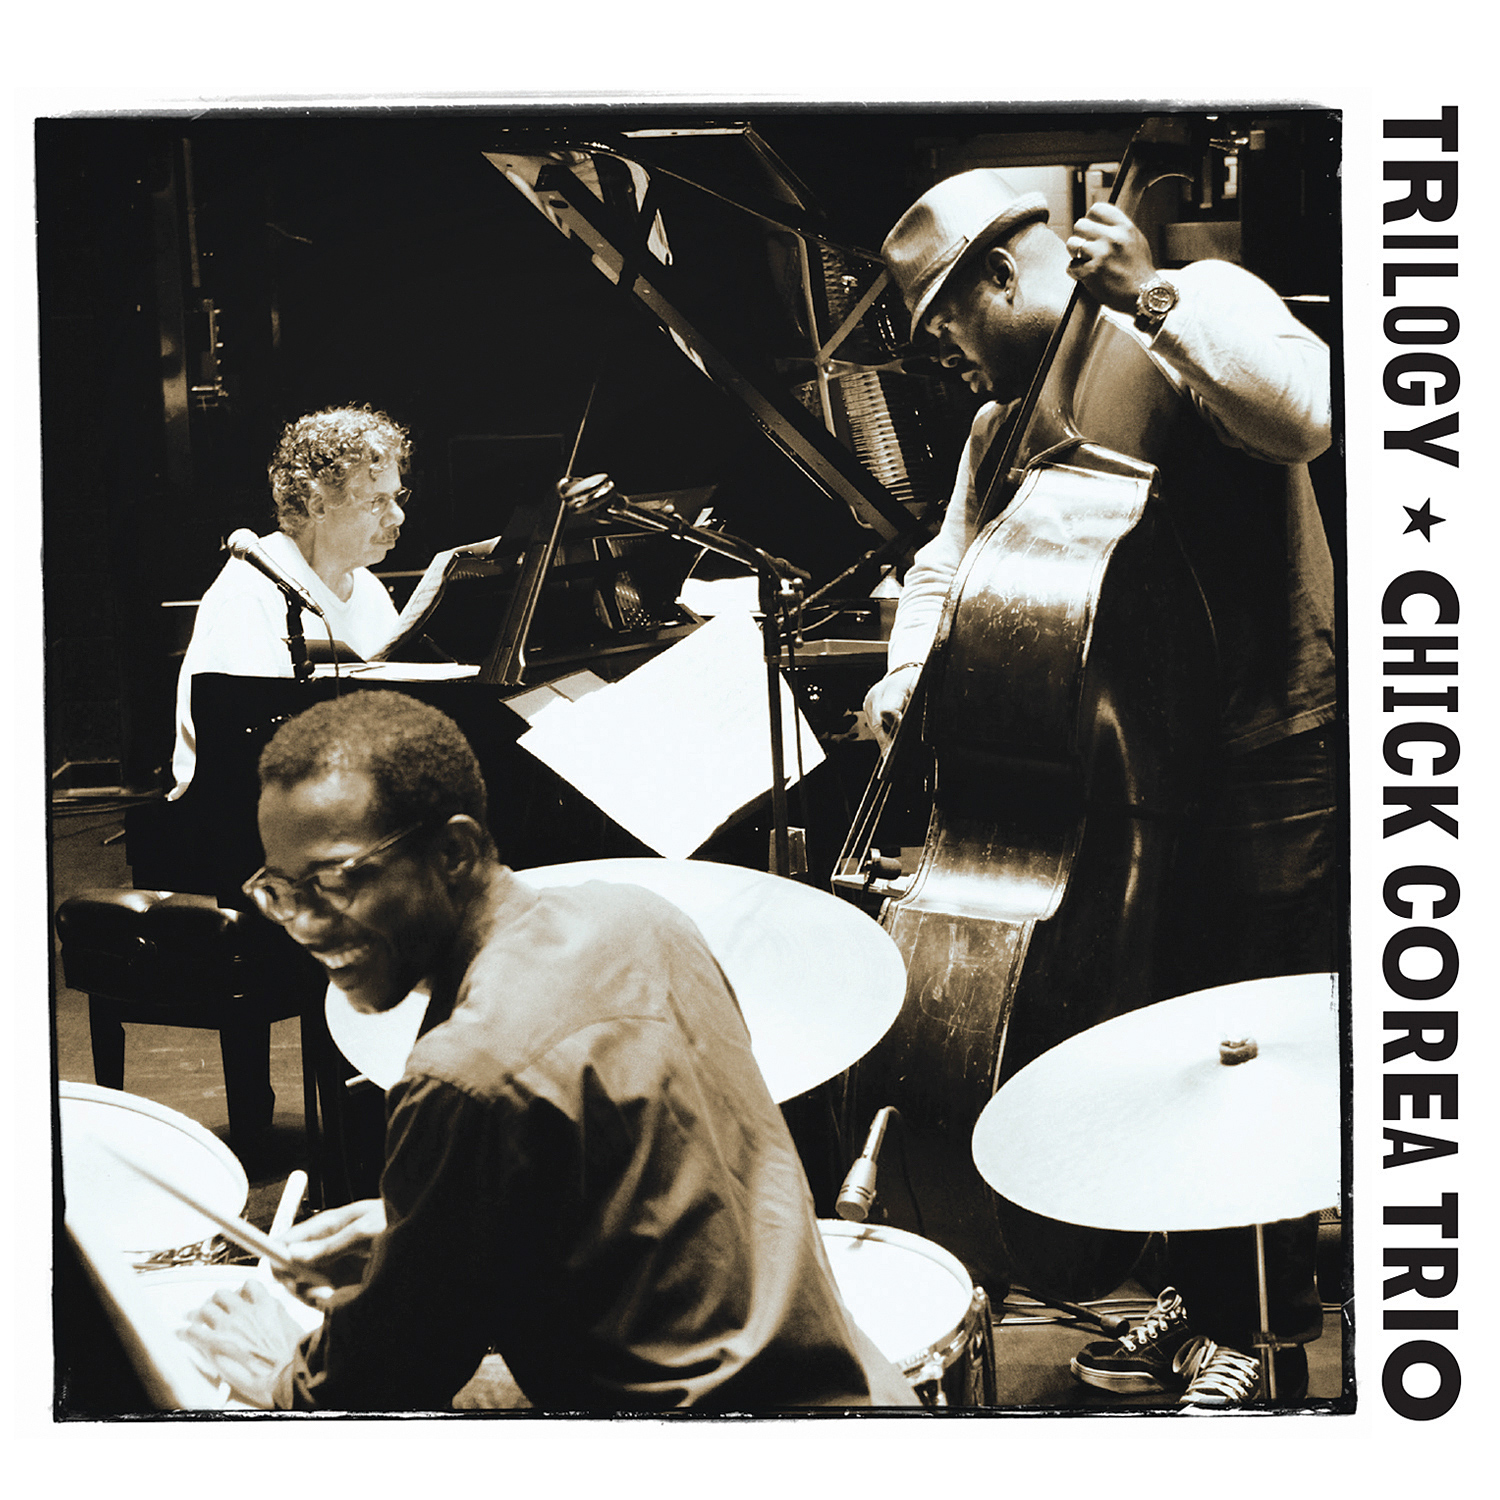 Chick Corea Trio - Trilogy (2013) [HDTracks FLAC 24bit/96kHz]